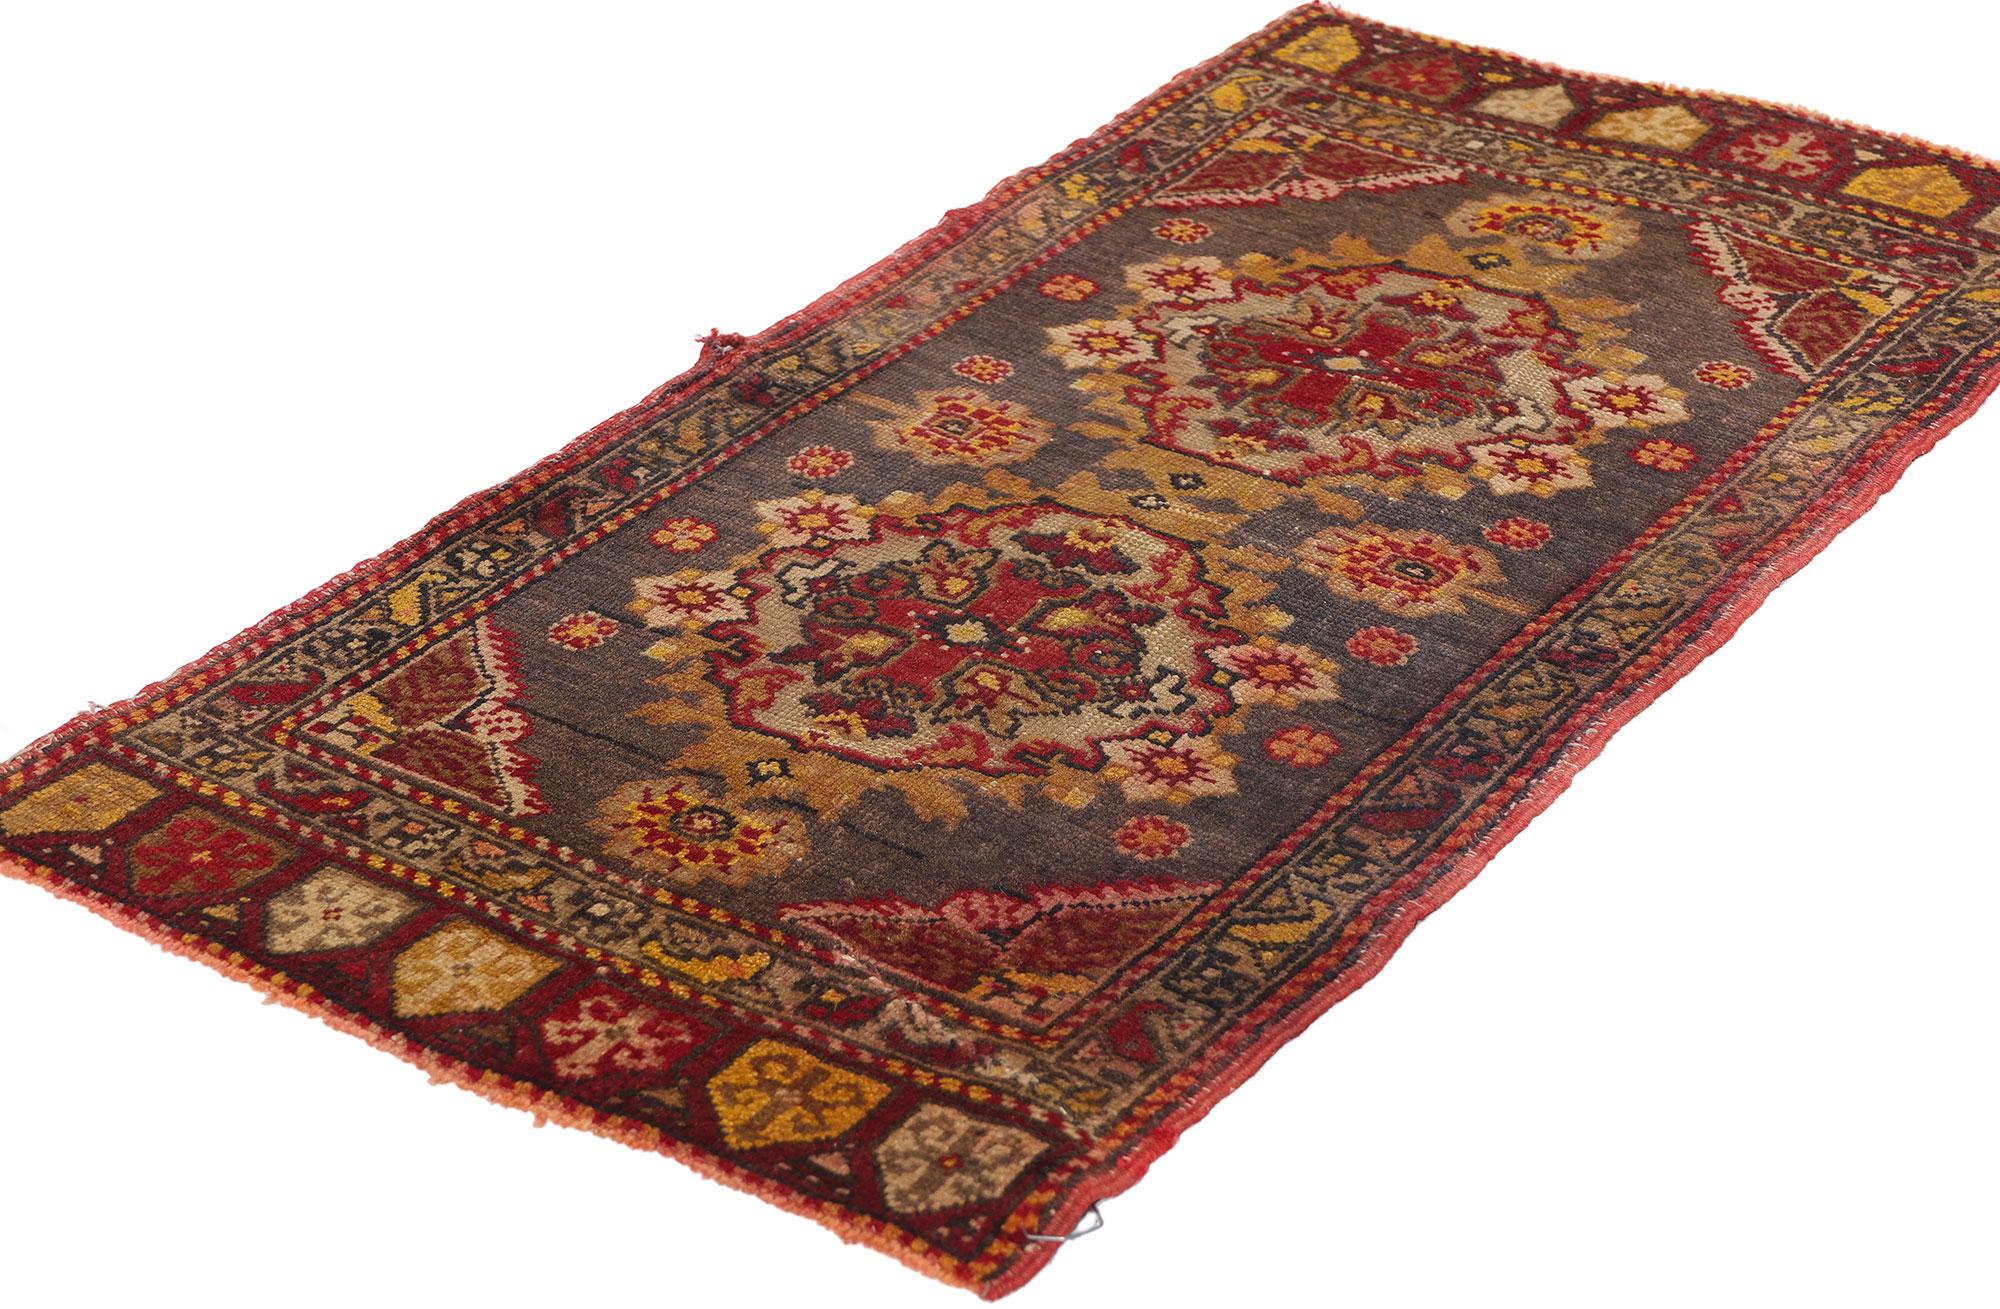 51200 Vintage Turkish Yastik Rug, 01'06 x 02'11. Turkish Yastik rugs, also known as 